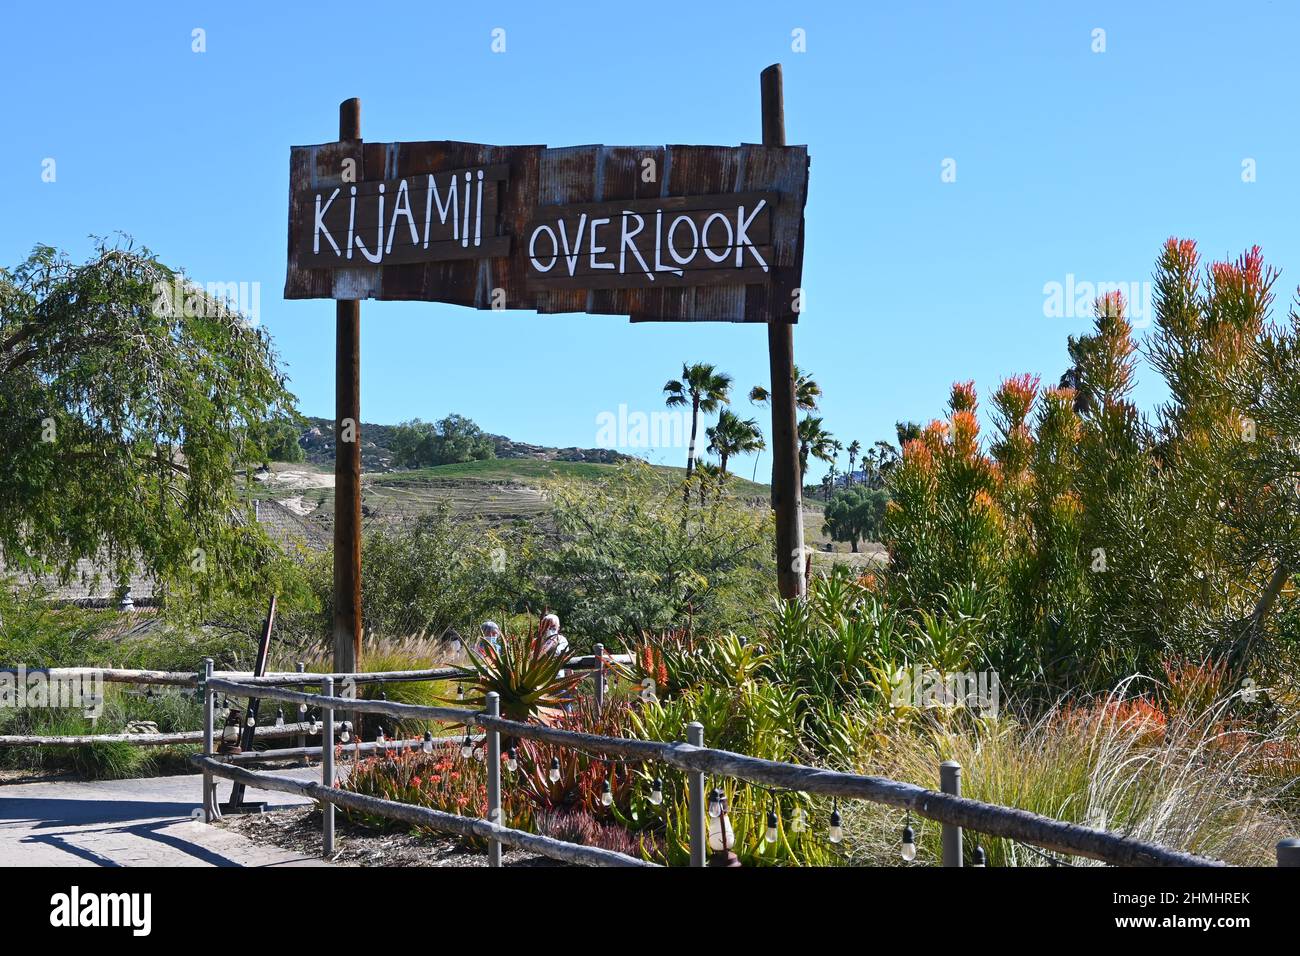 ESCONDIDO, CALIFORNIE - 9 FÉVRIER 2022 : le Kijamii Overlook offre une vue panoramique sur le San Diego Zoo Safari Park Banque D'Images